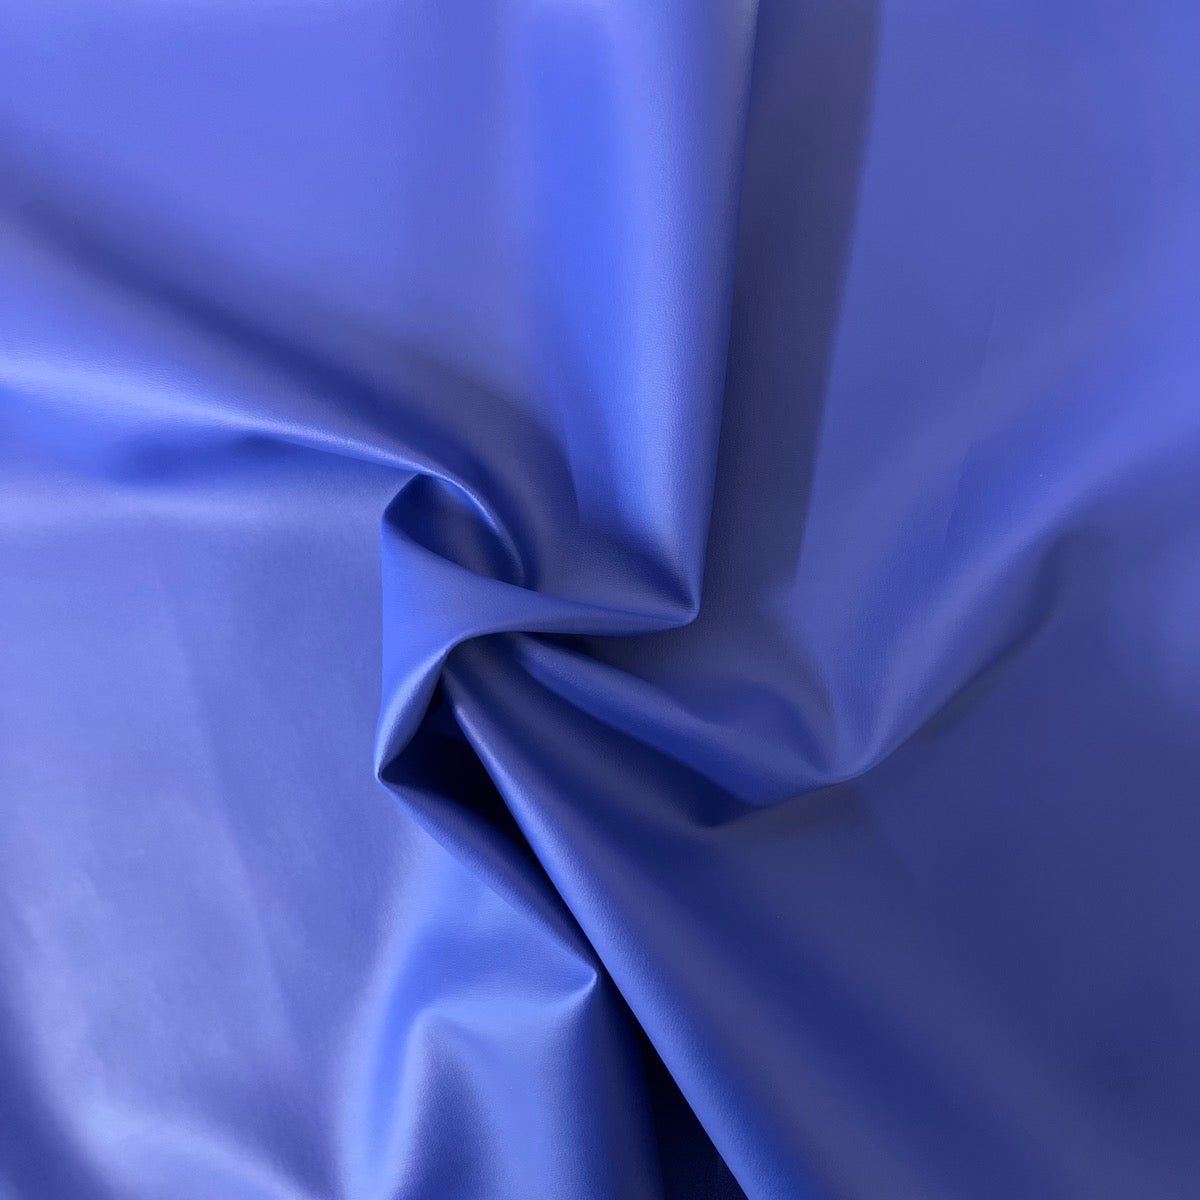 Royal Blue Soft Skin Faux Leather Vinyl Fabric - Fashion Fabrics LLC